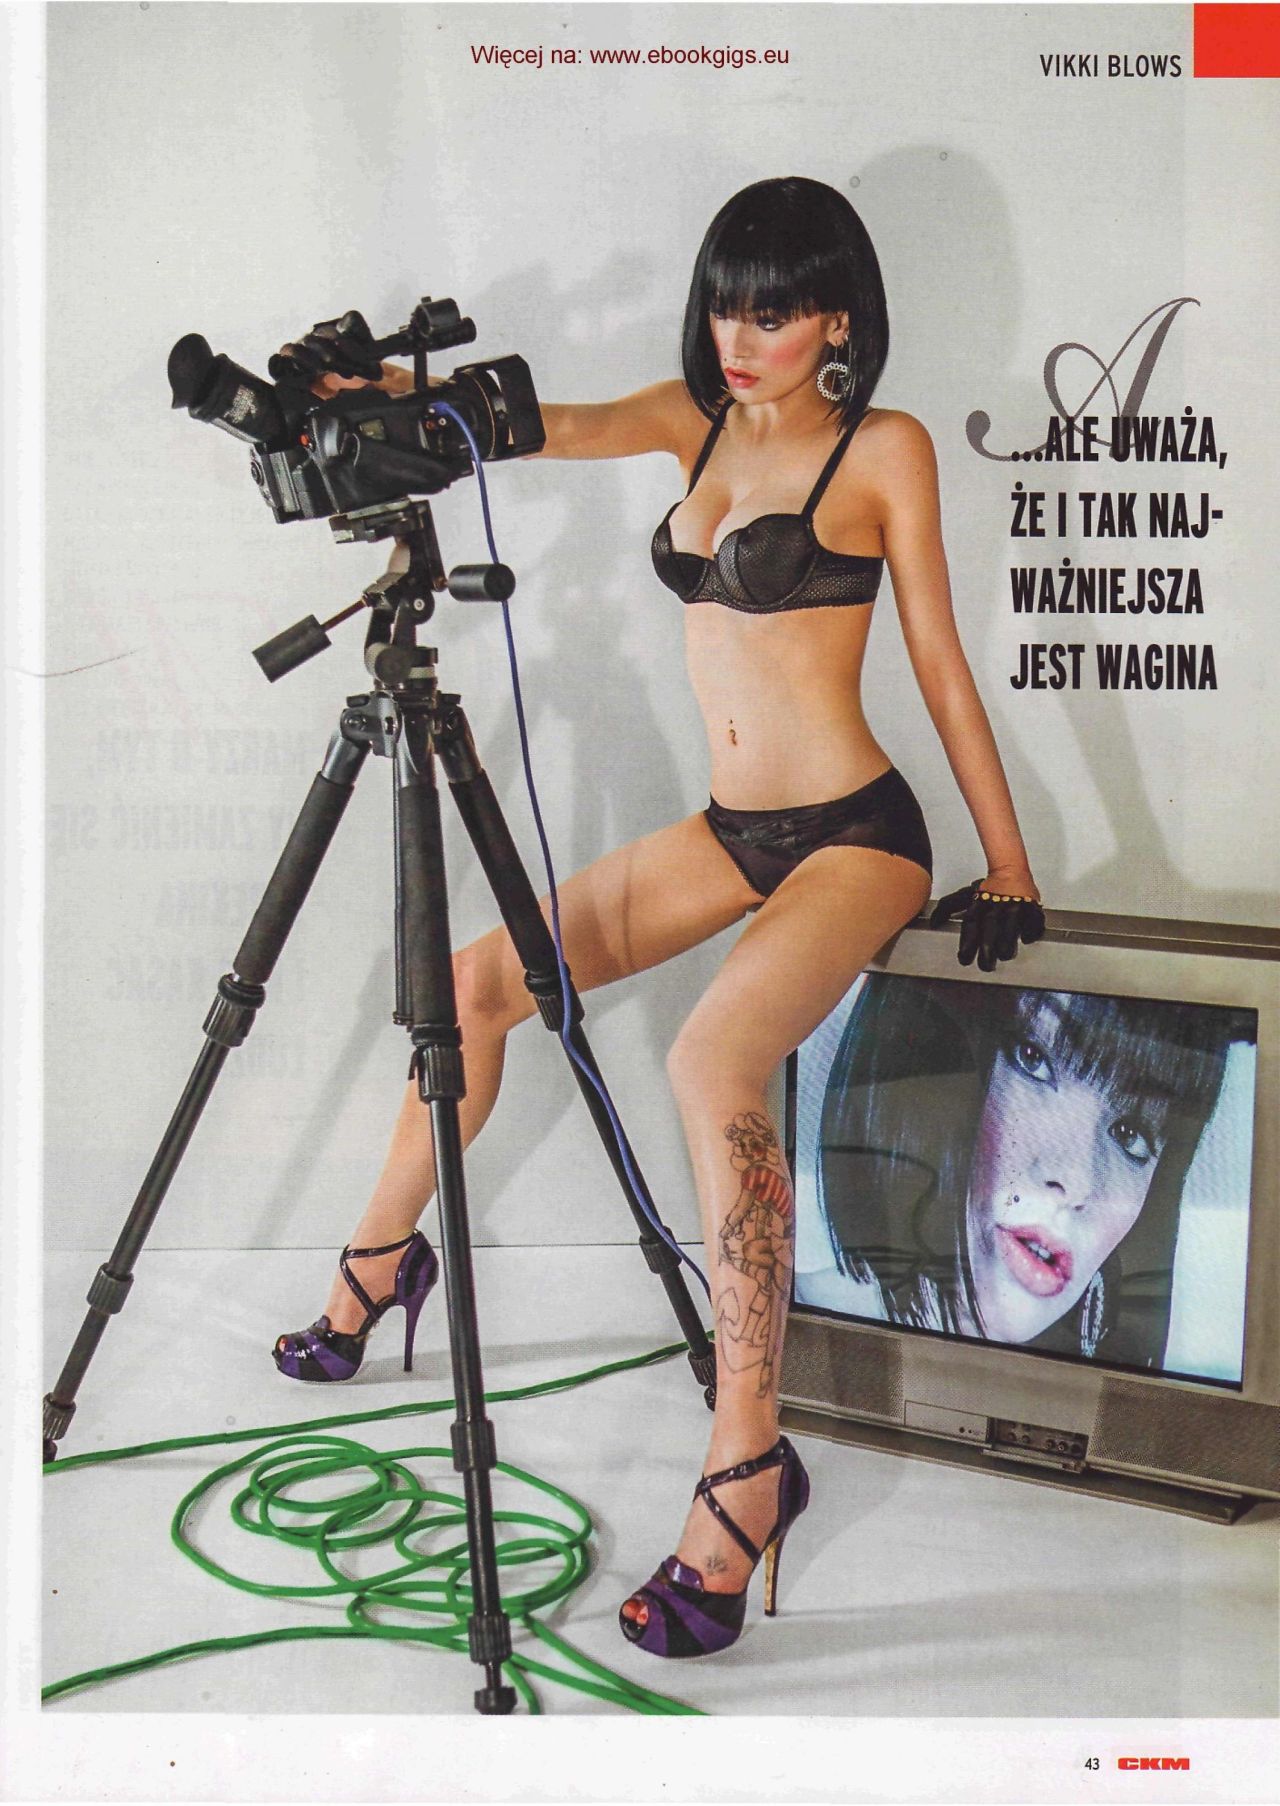 VIKKI BLOWS - CKM Magazine - November 2013 (Pologne/Poland)[FranÃ§ais] Vikki Blows,